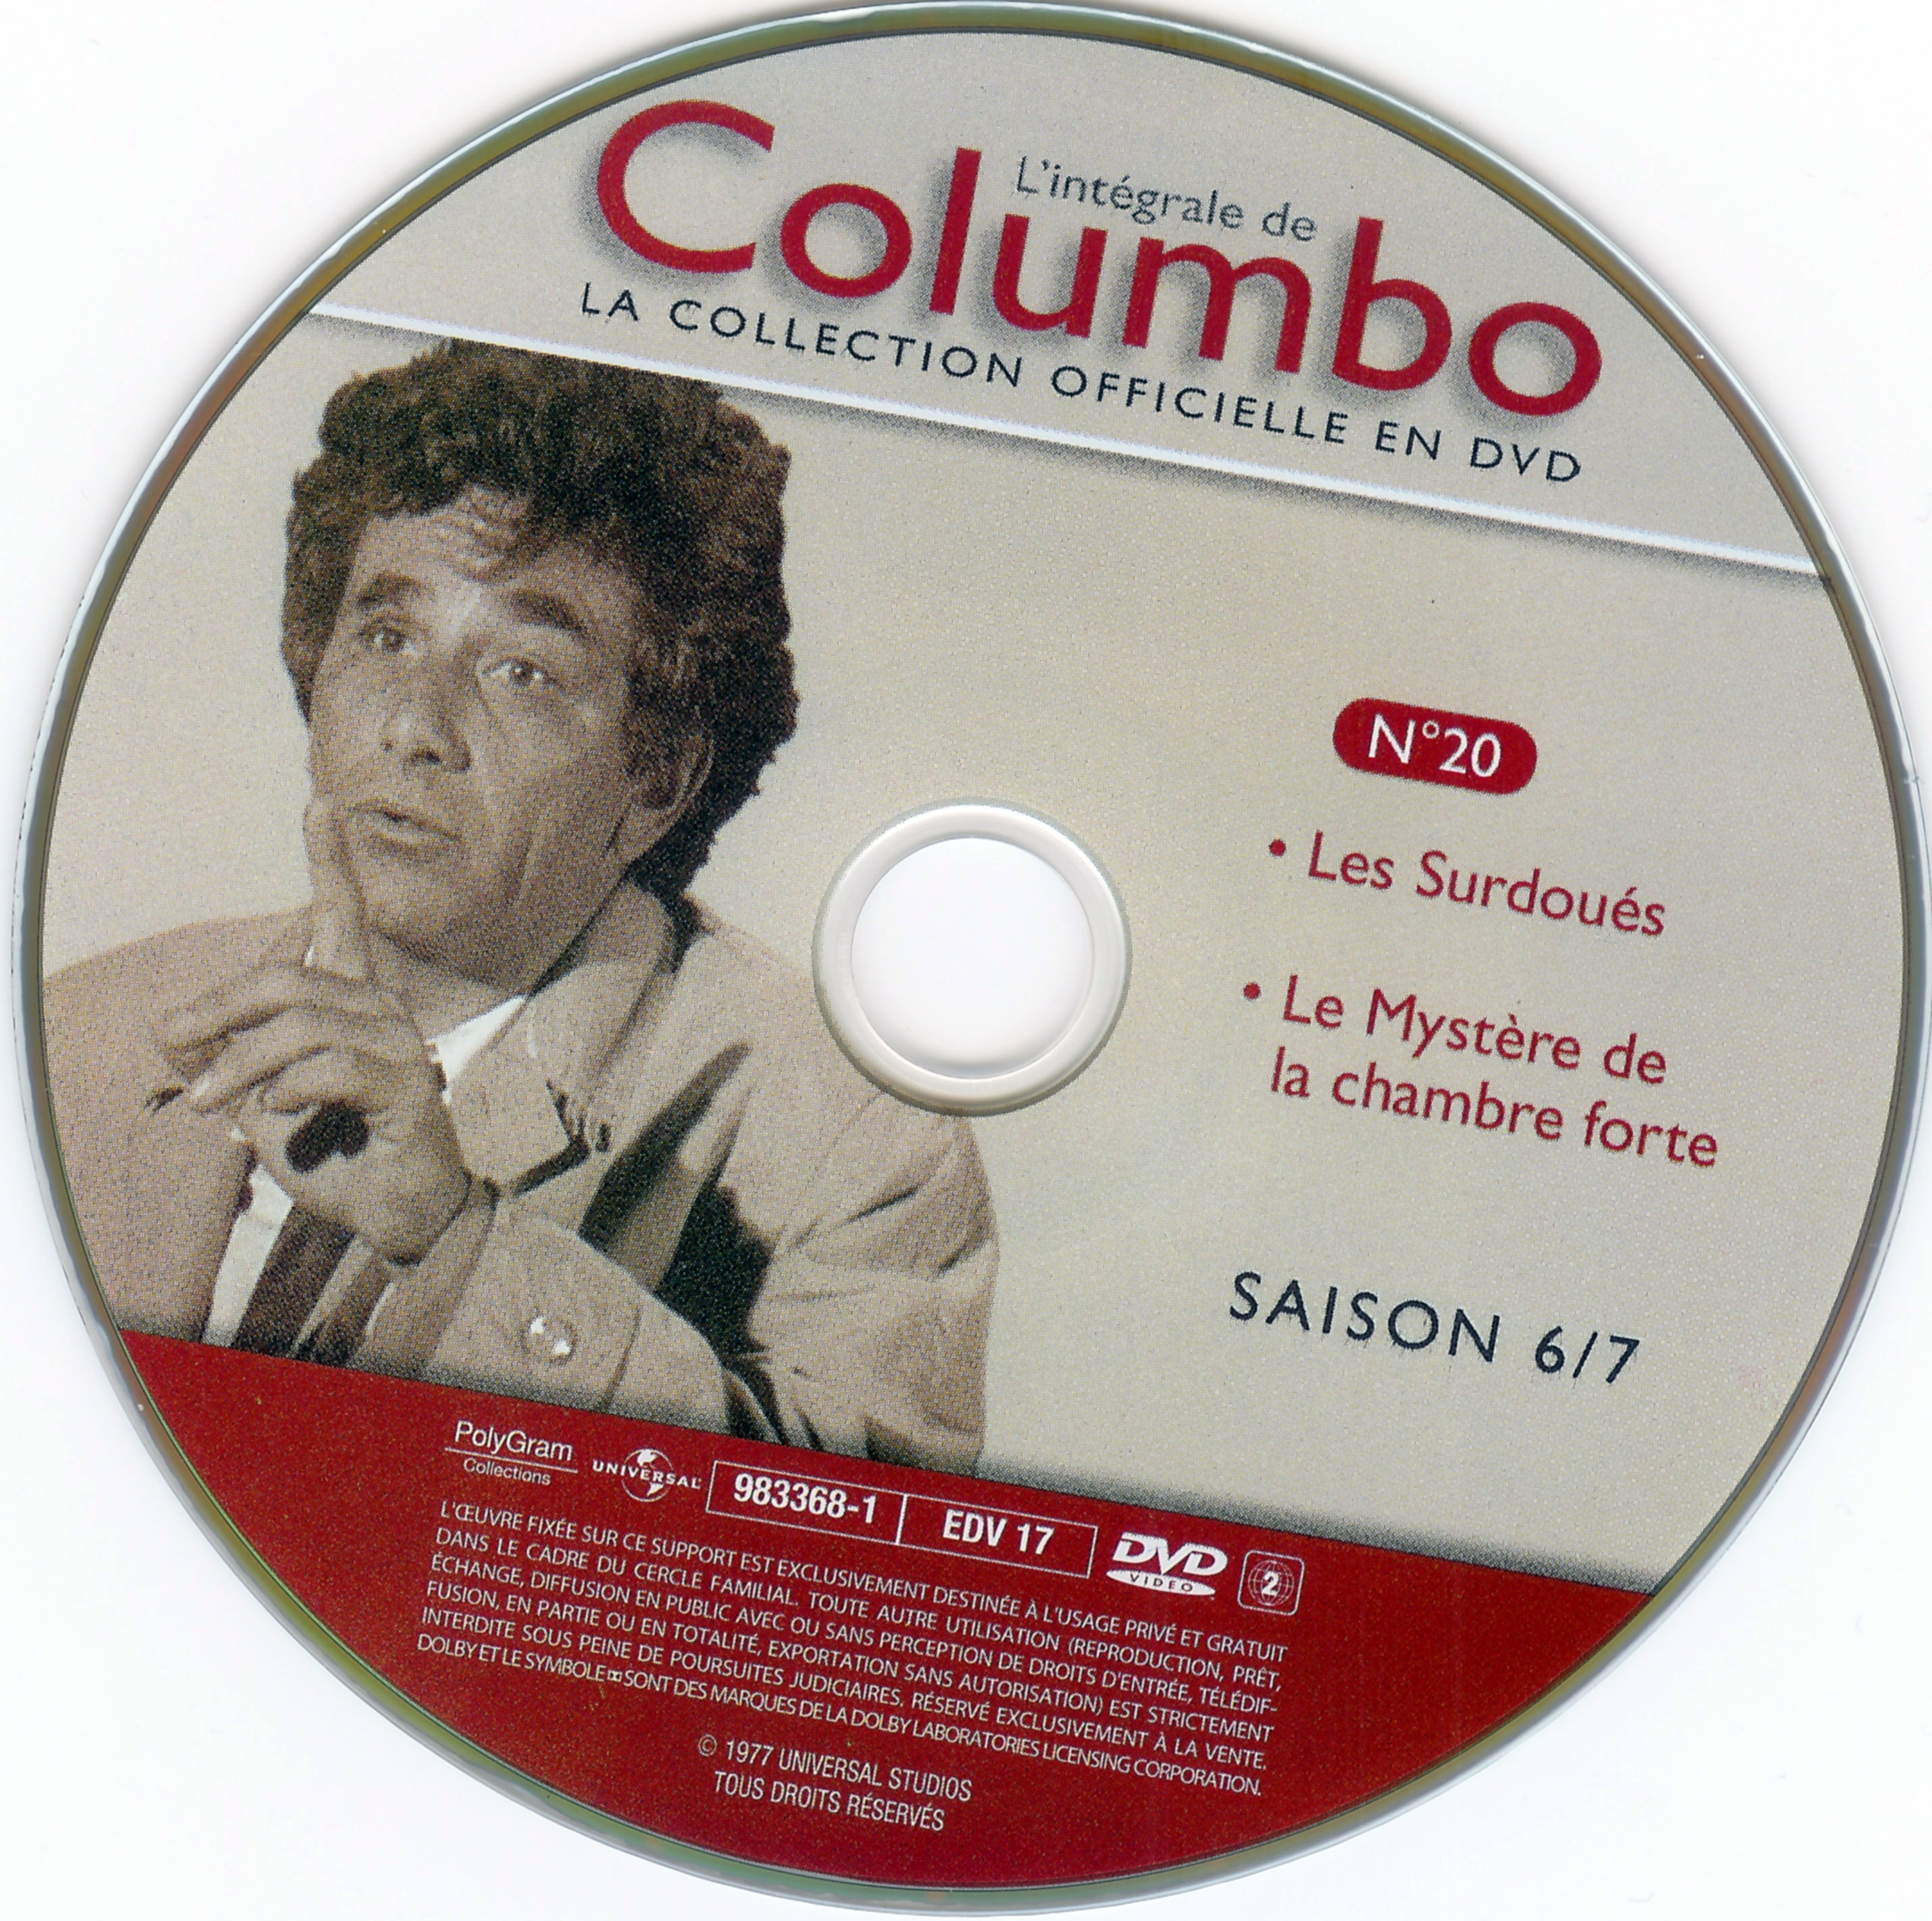 Columbo saison 6-7 vol 20